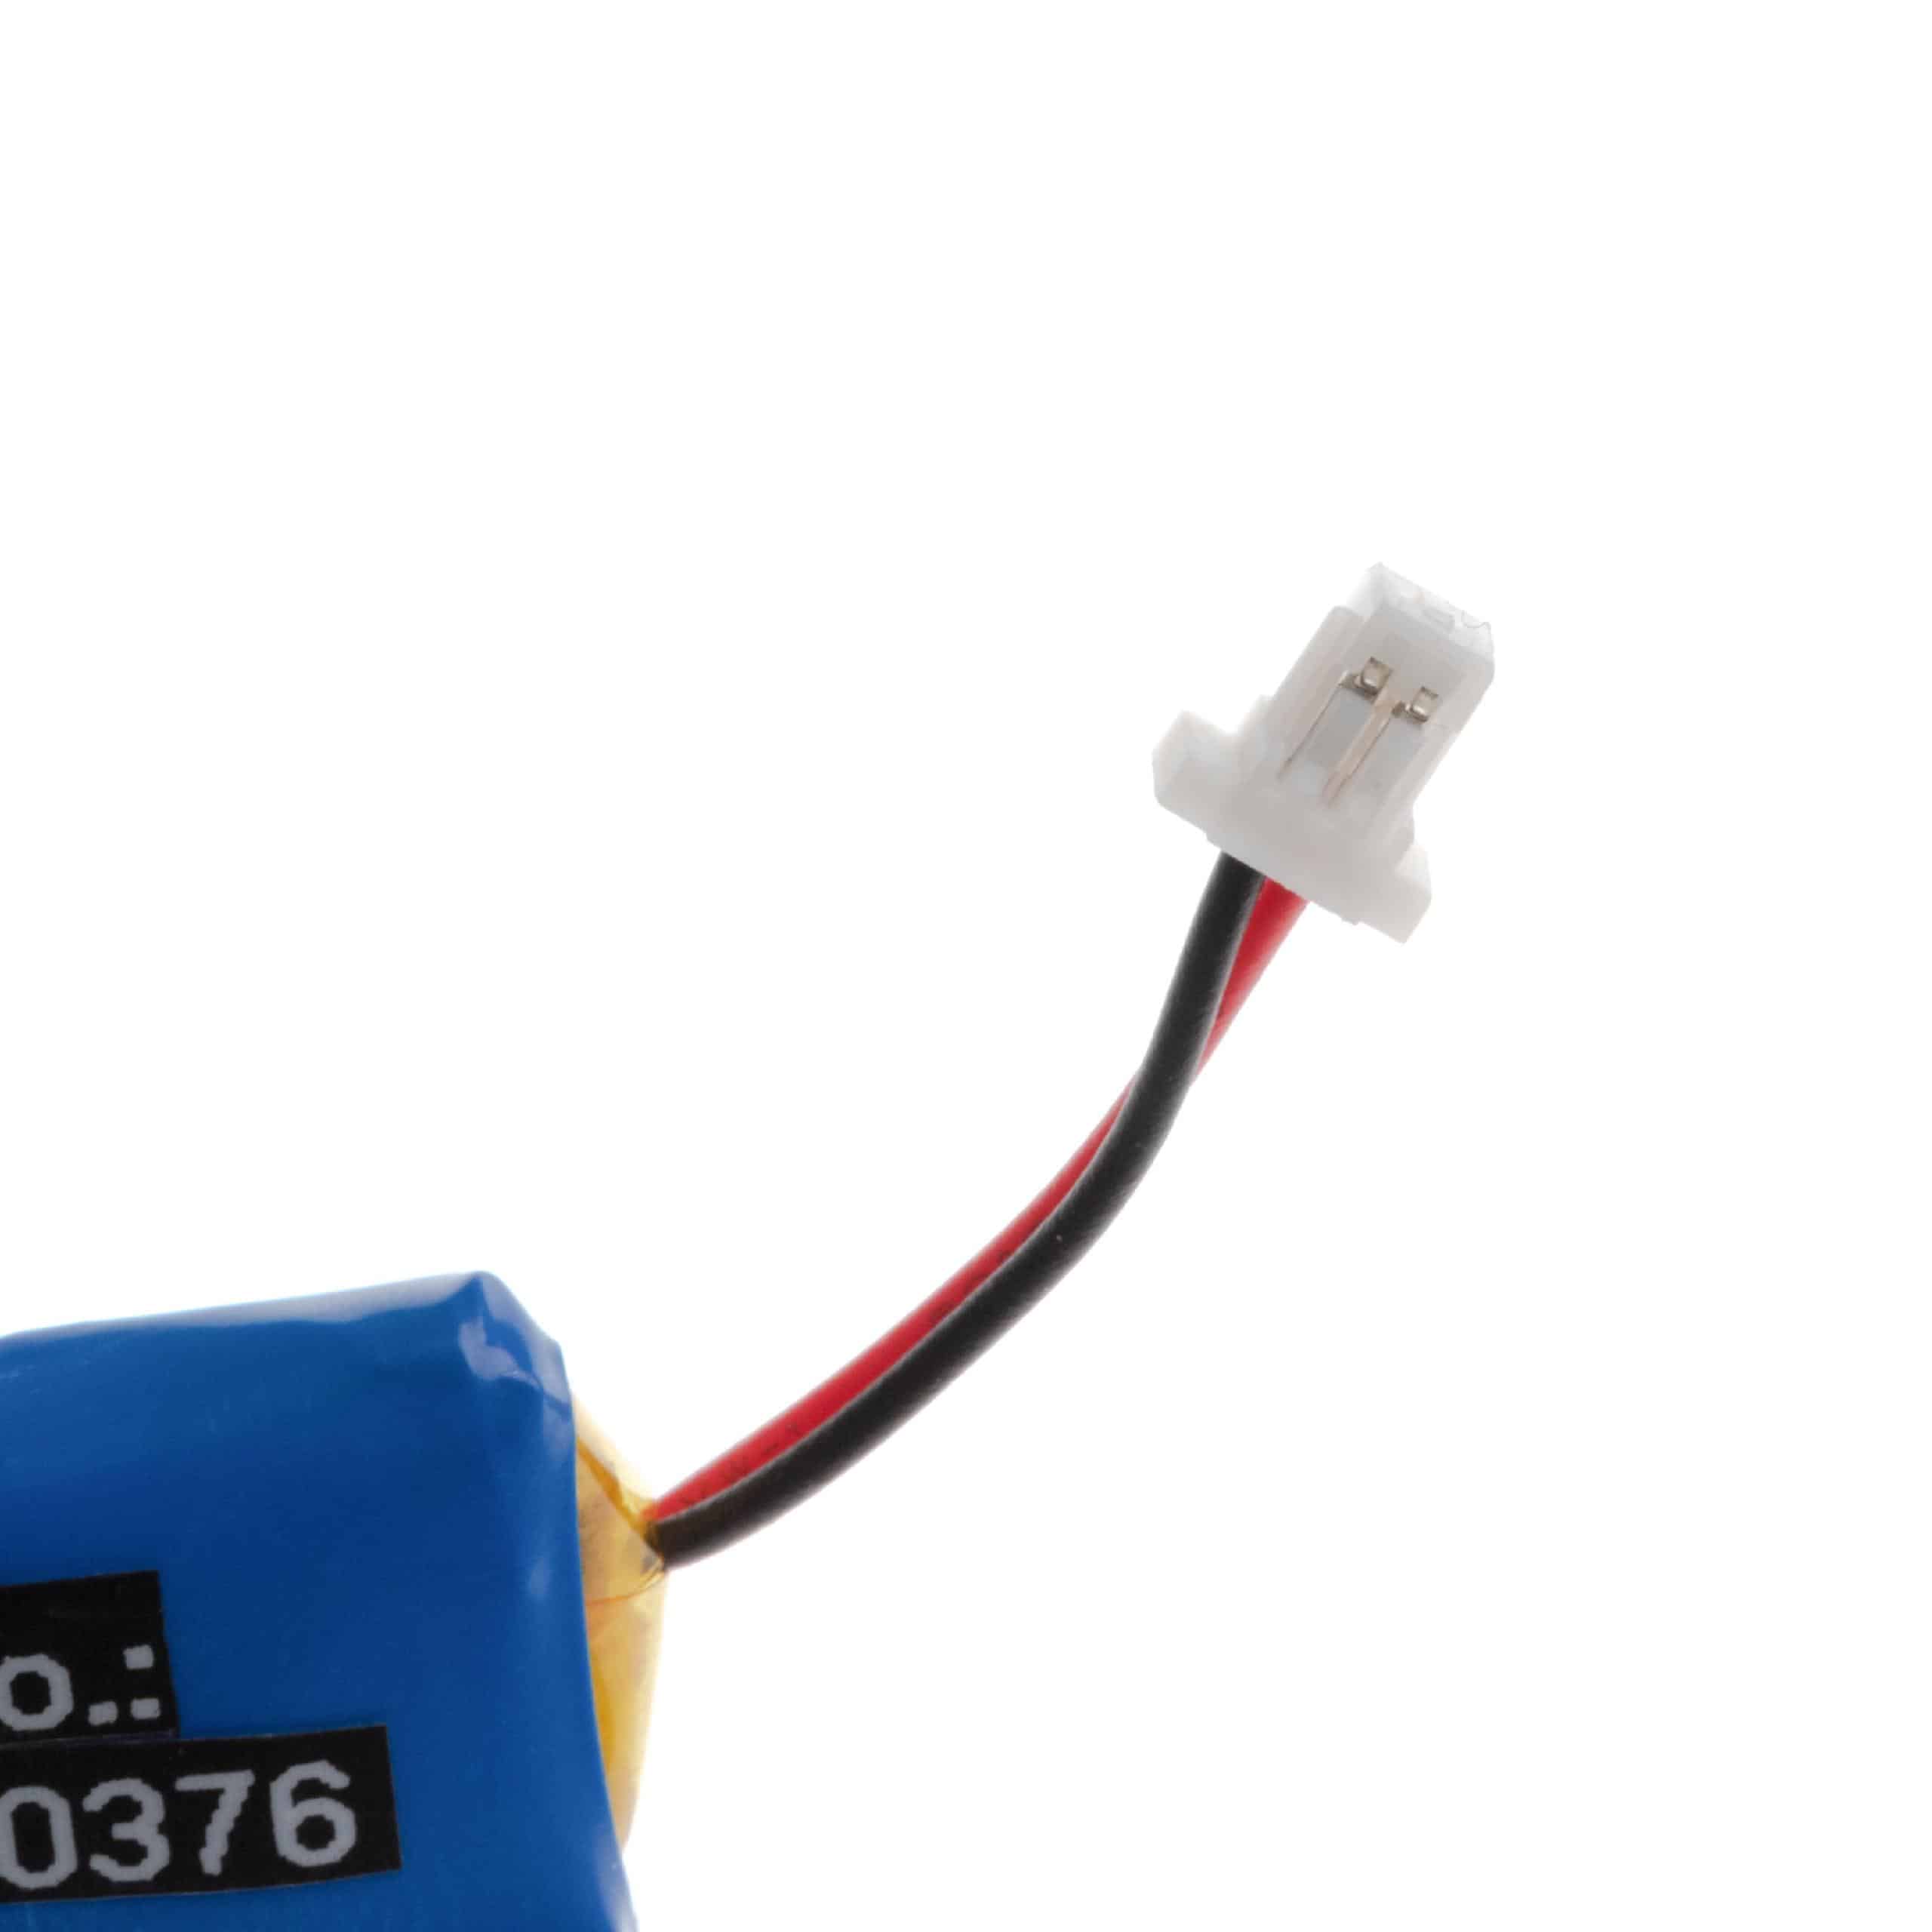 Akumulator do słuchawek bezprzewodowych zamiennik Plantronics 84479-01, 86180-01 - 110 mAh 3,7 V LiPo